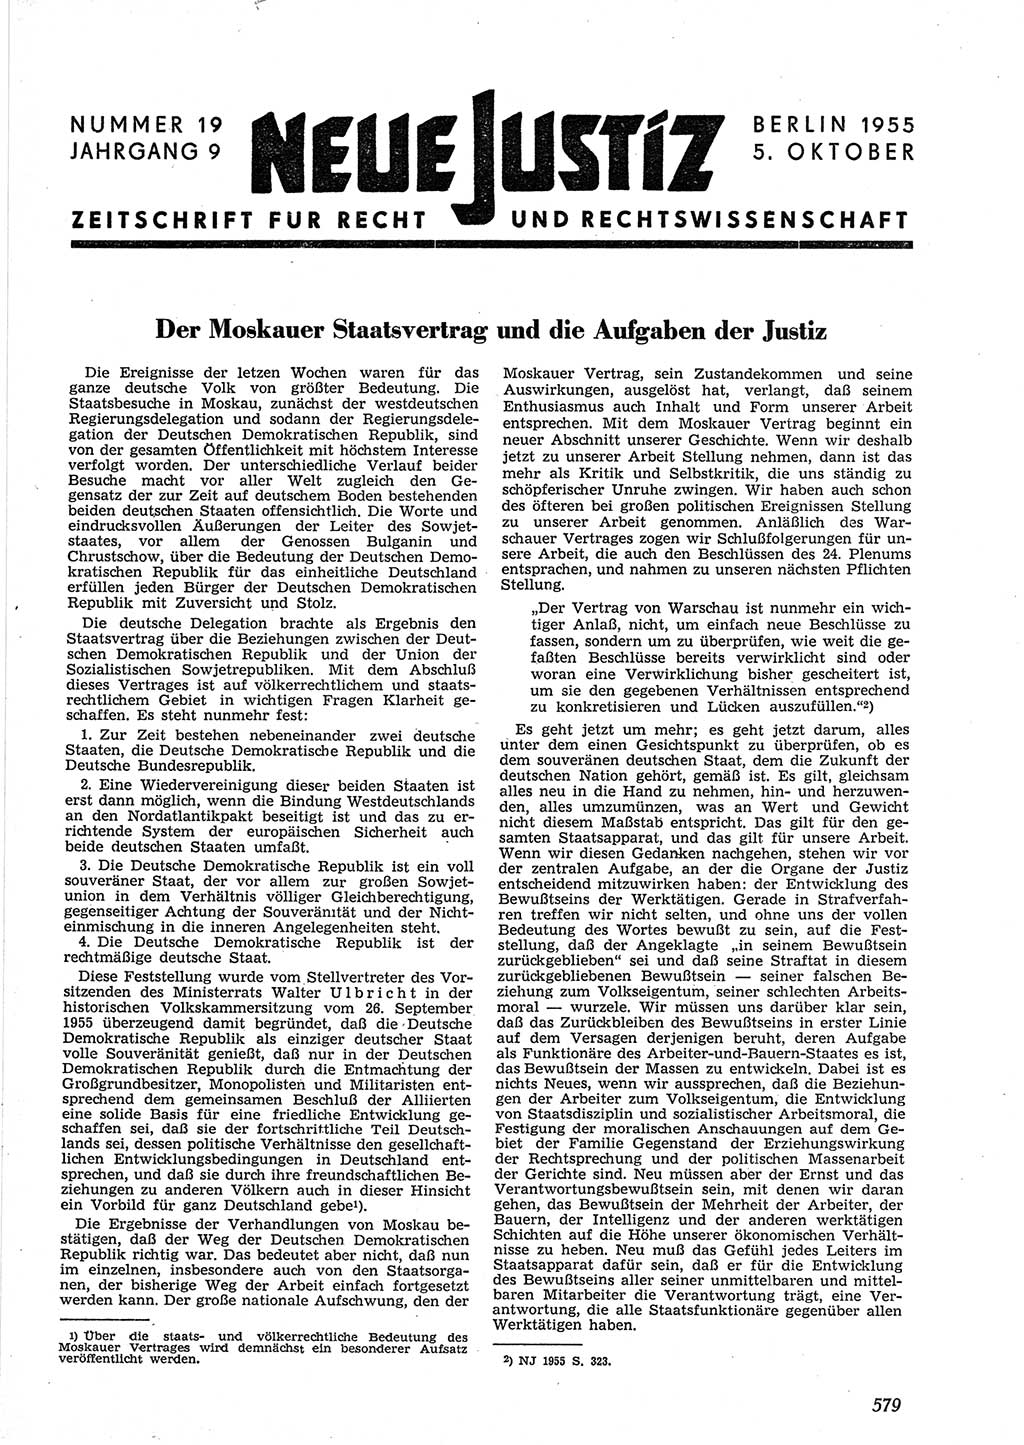 Neue Justiz (NJ), Zeitschrift für Recht und Rechtswissenschaft [Deutsche Demokratische Republik (DDR)], 9. Jahrgang 1955, Seite 579 (NJ DDR 1955, S. 579)